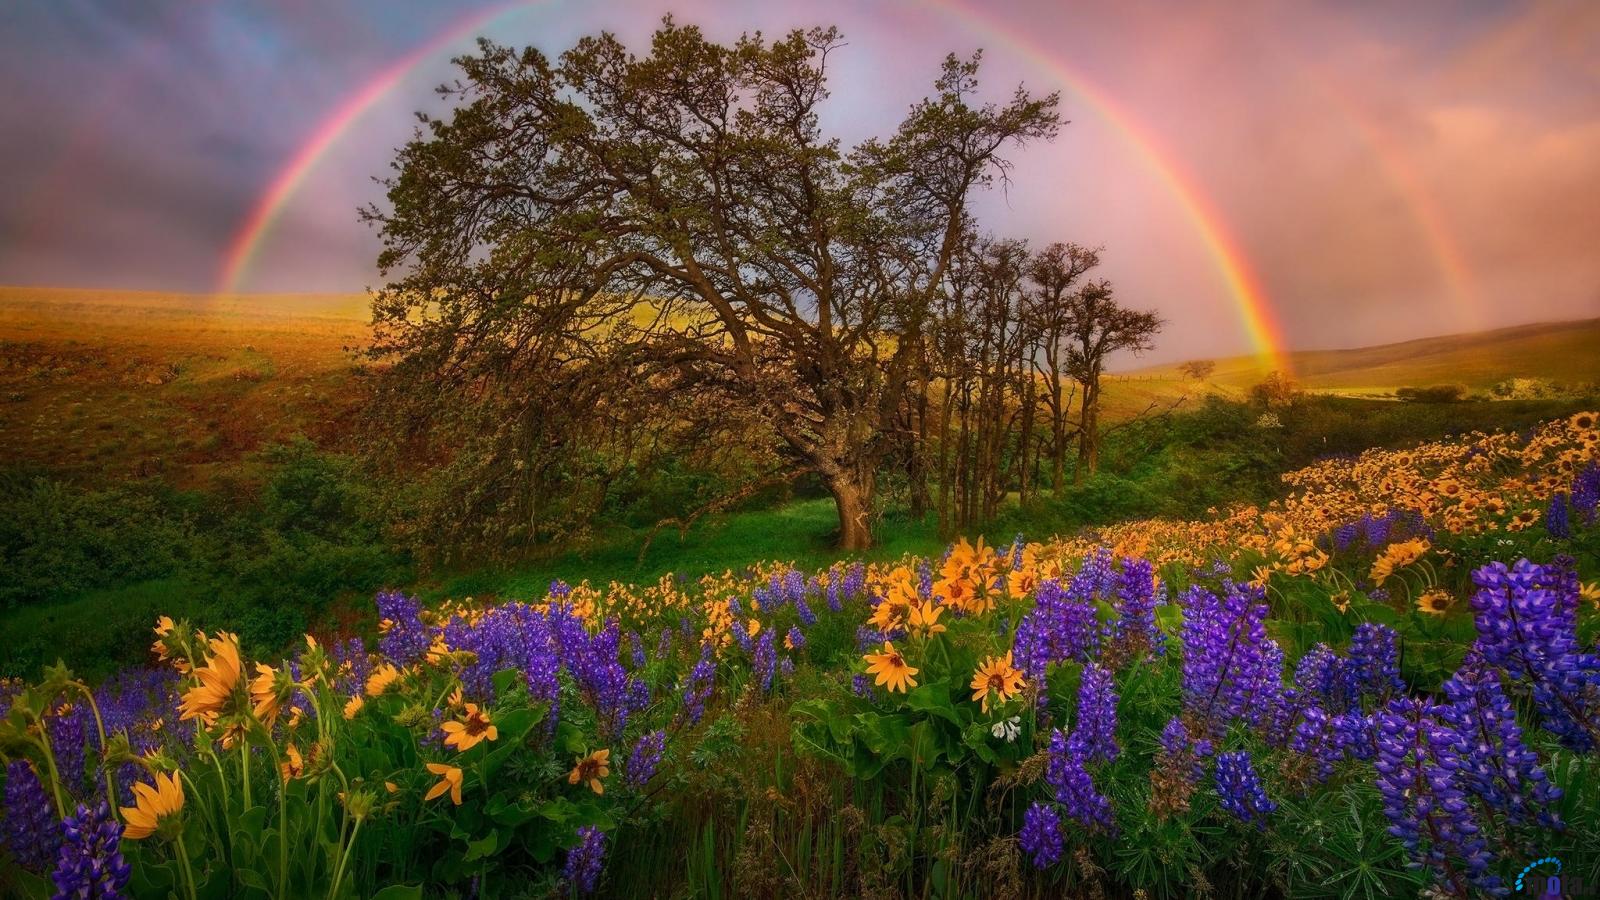 Rainbow art photo